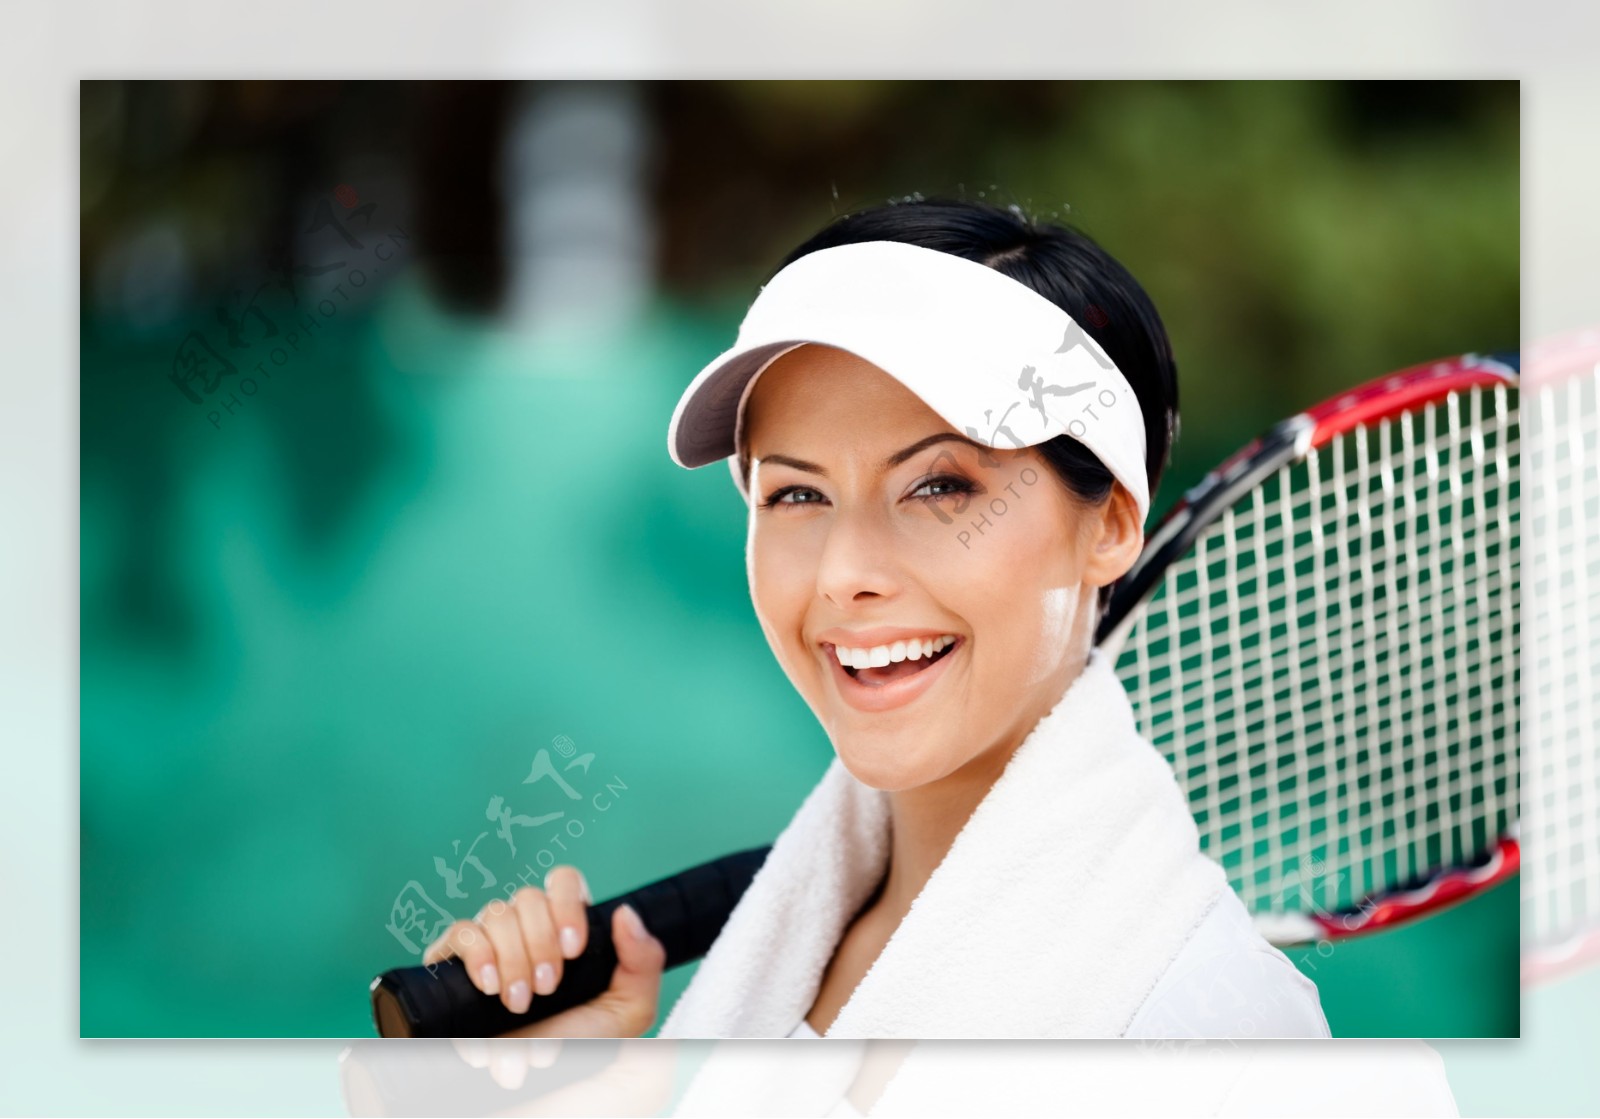 拿着网球微笑的女人